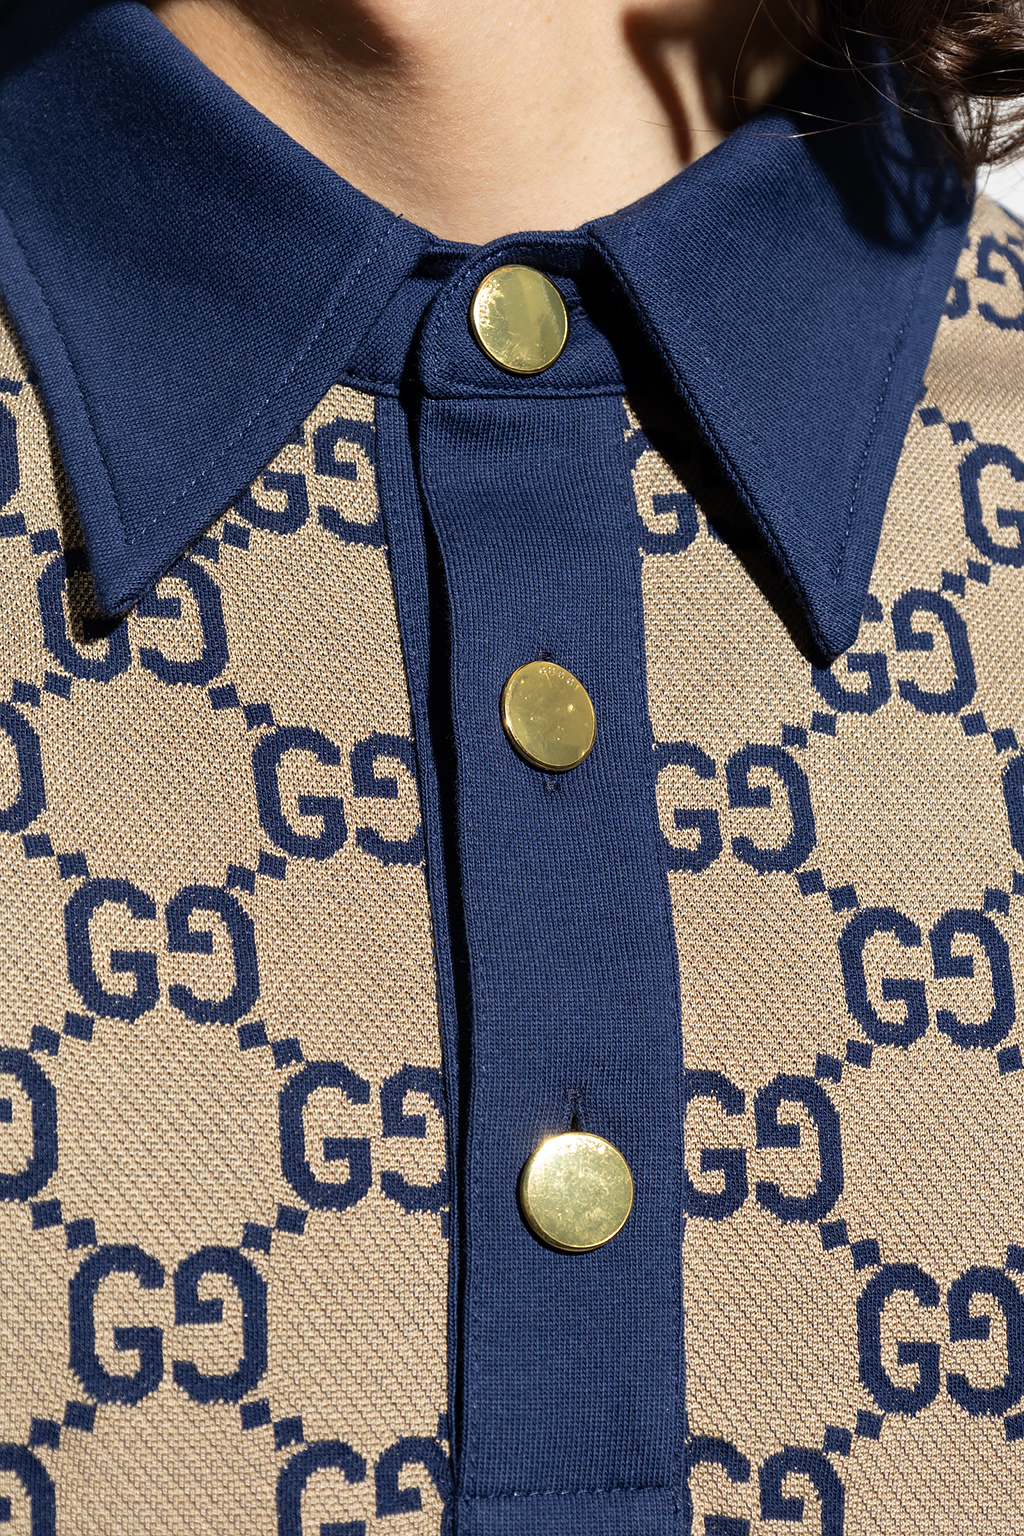 Gucci Men's Maxi GG Monogram Polo Shirt